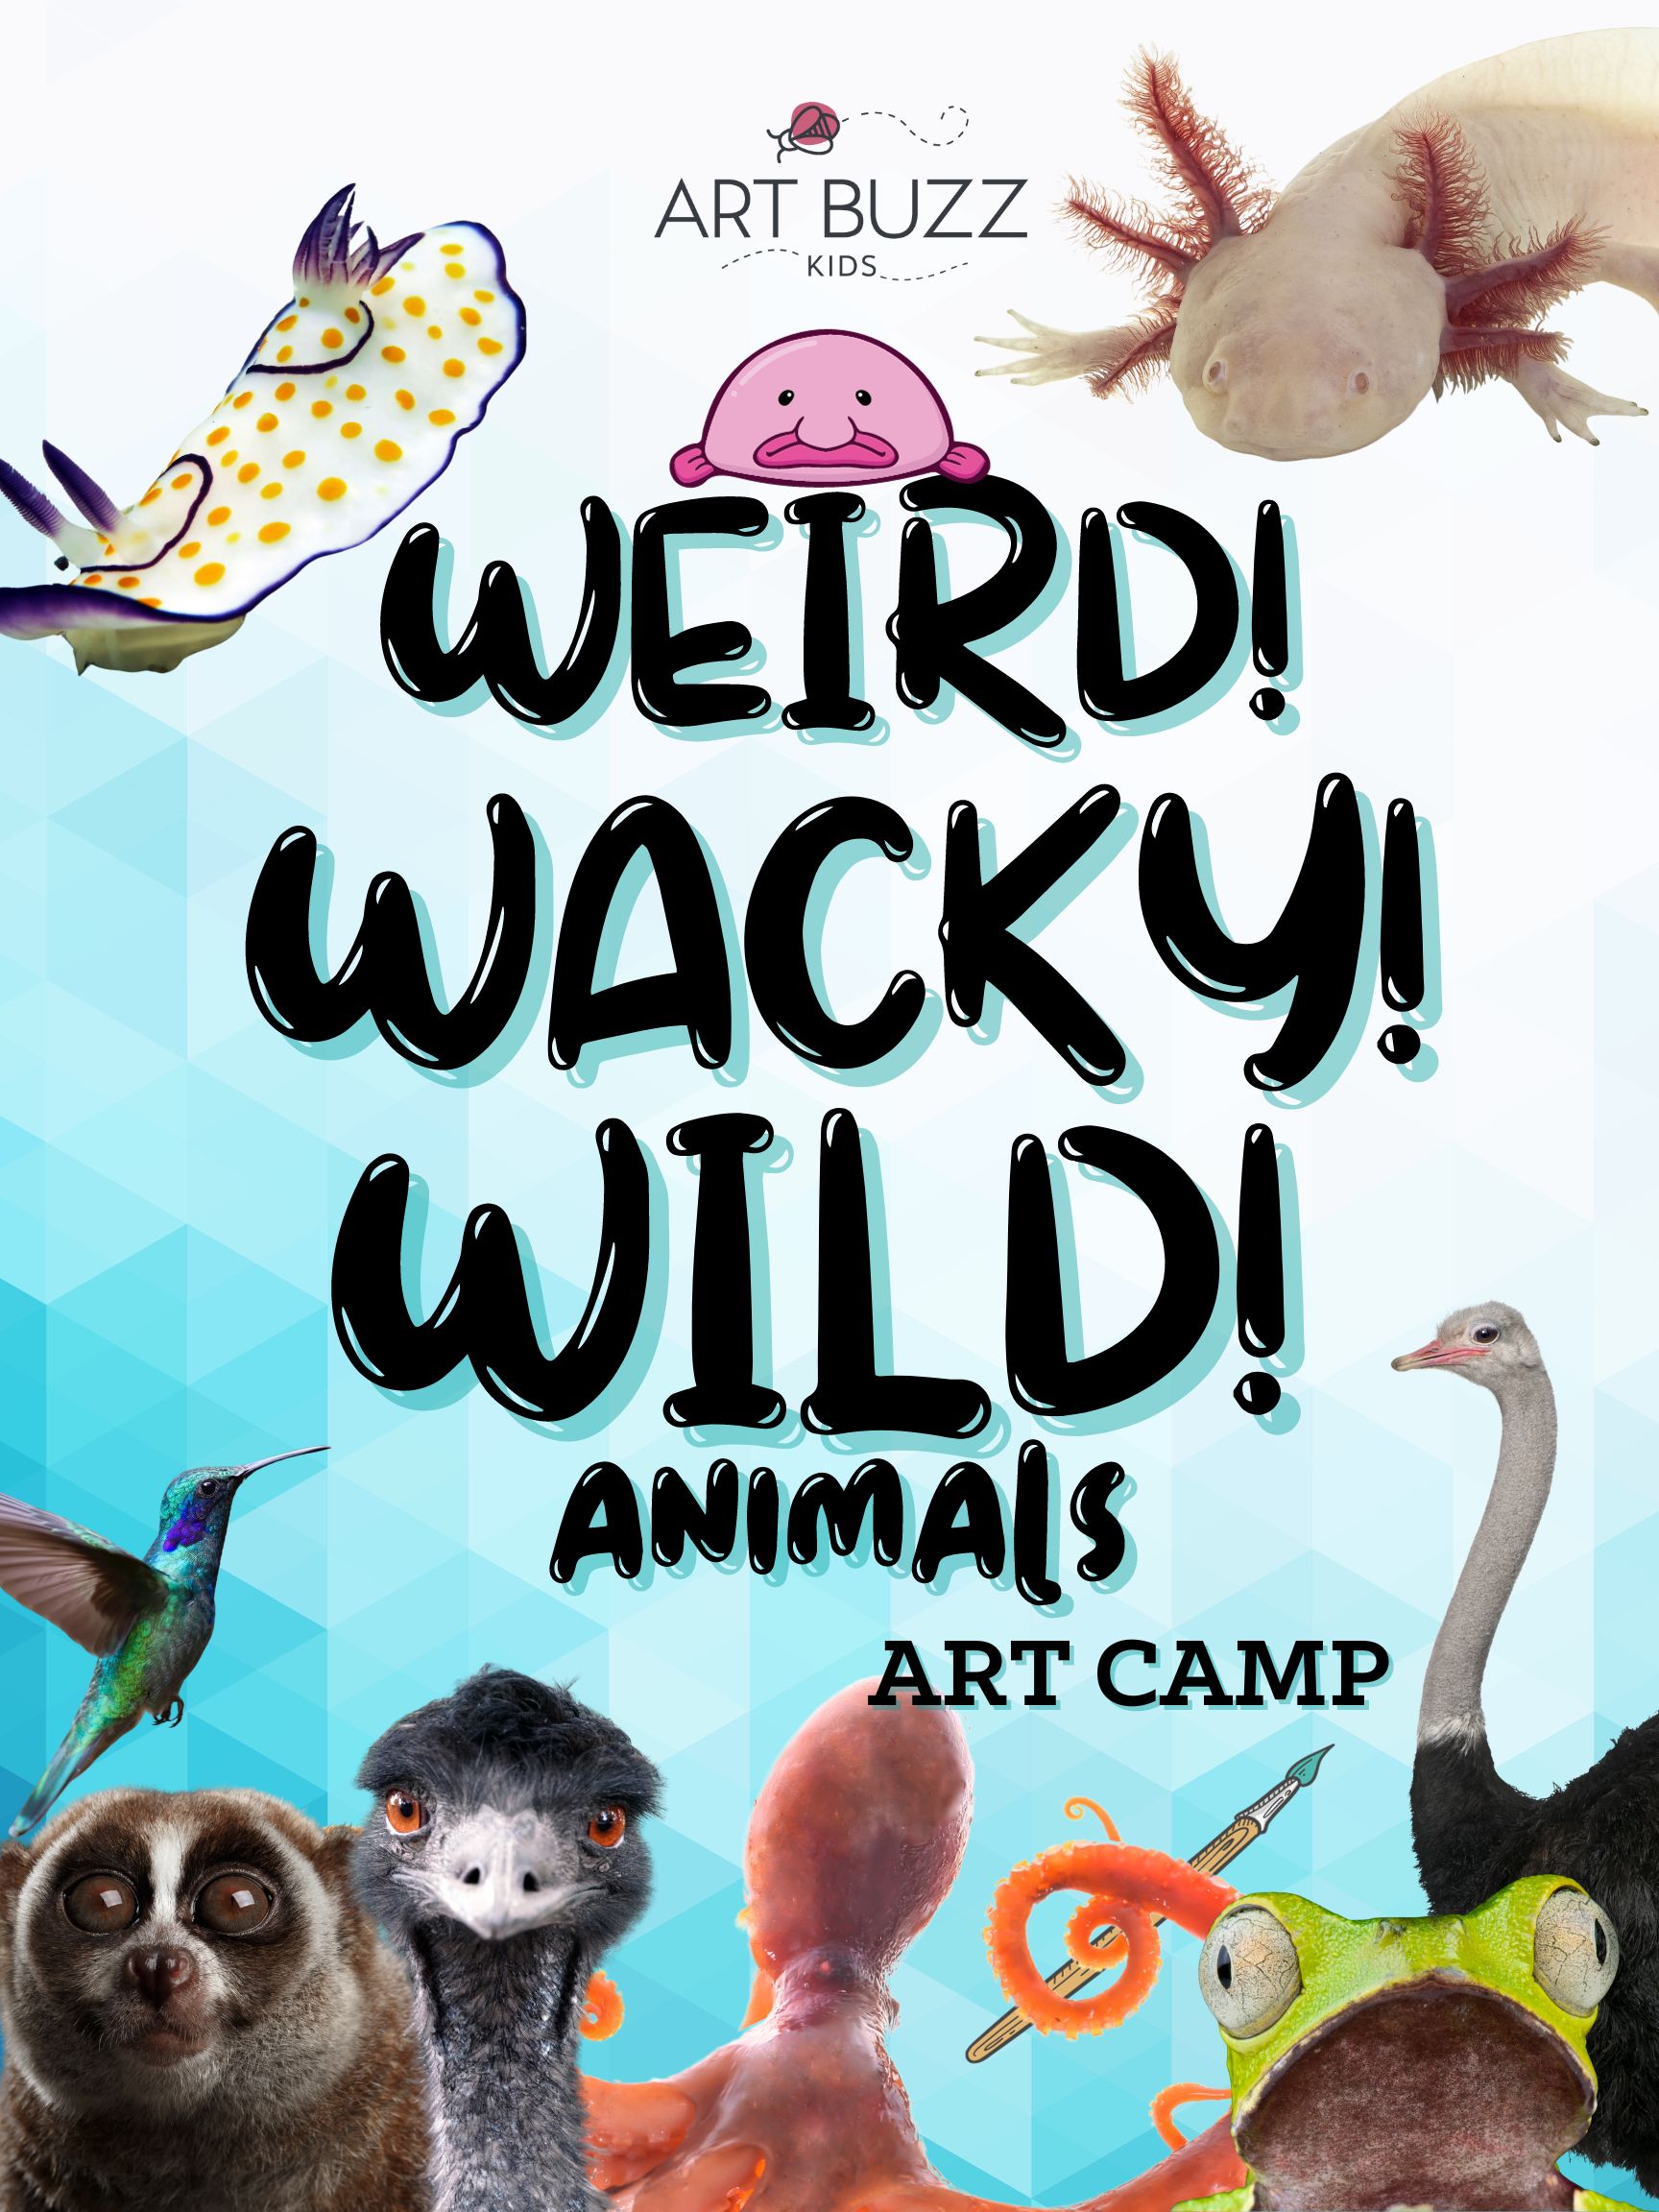 Art Buzz Kids | NEW! WEIRD! WACKY! WILD! Animals Art Camp! 